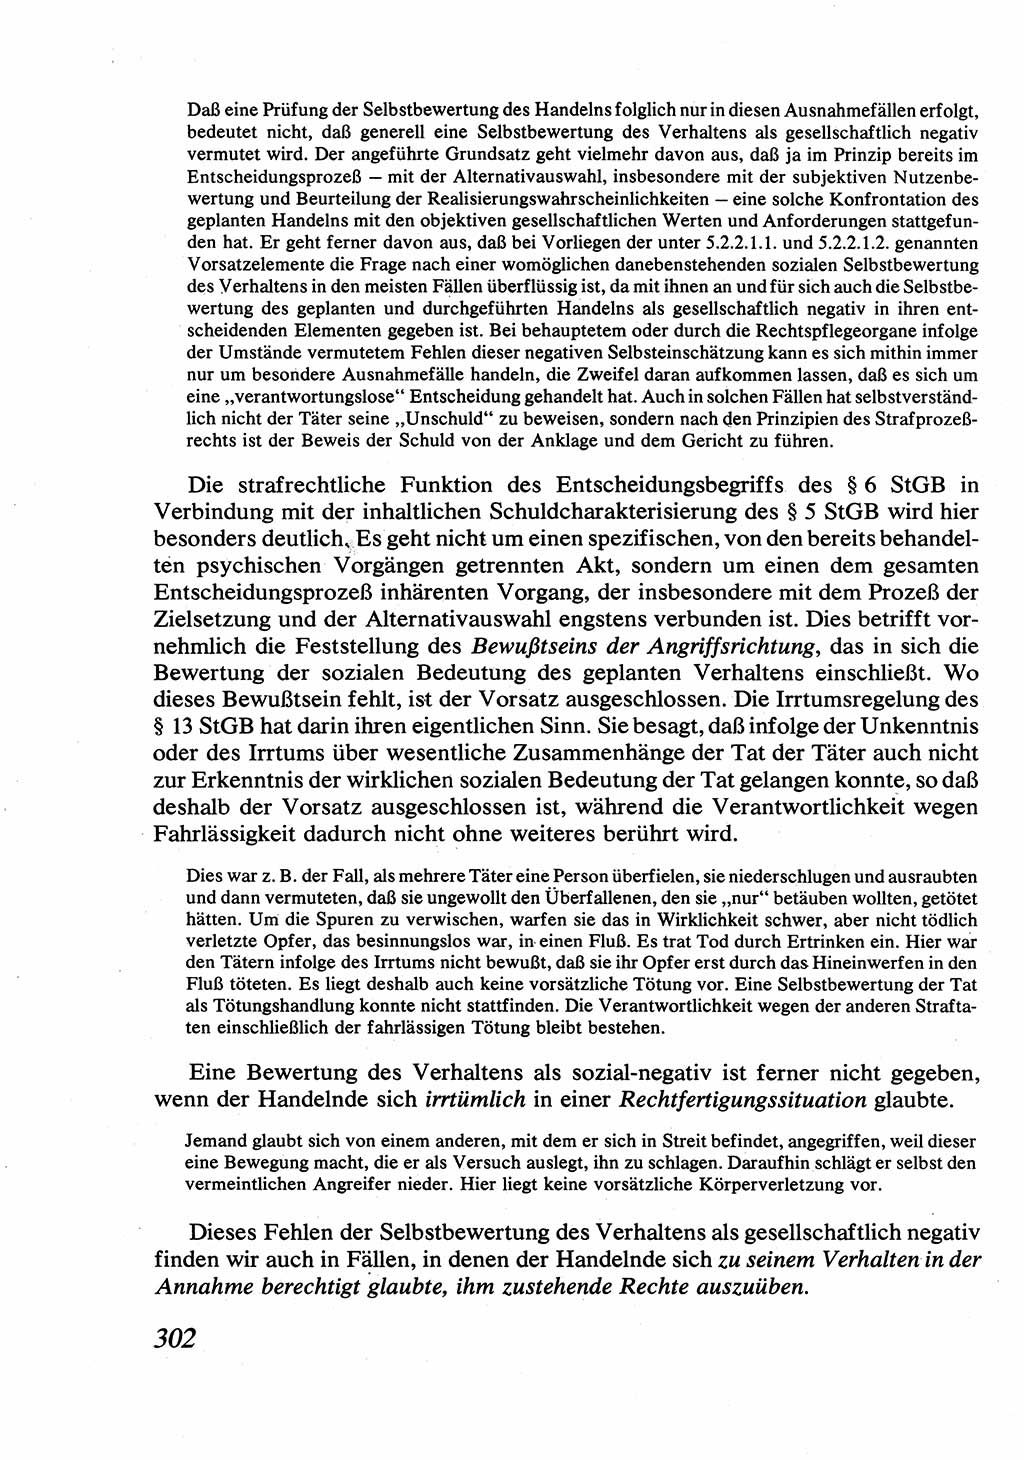 Strafrecht [Deutsche Demokratische Republik (DDR)], Allgemeiner Teil, Lehrbuch 1976, Seite 302 (Strafr. DDR AT Lb. 1976, S. 302)